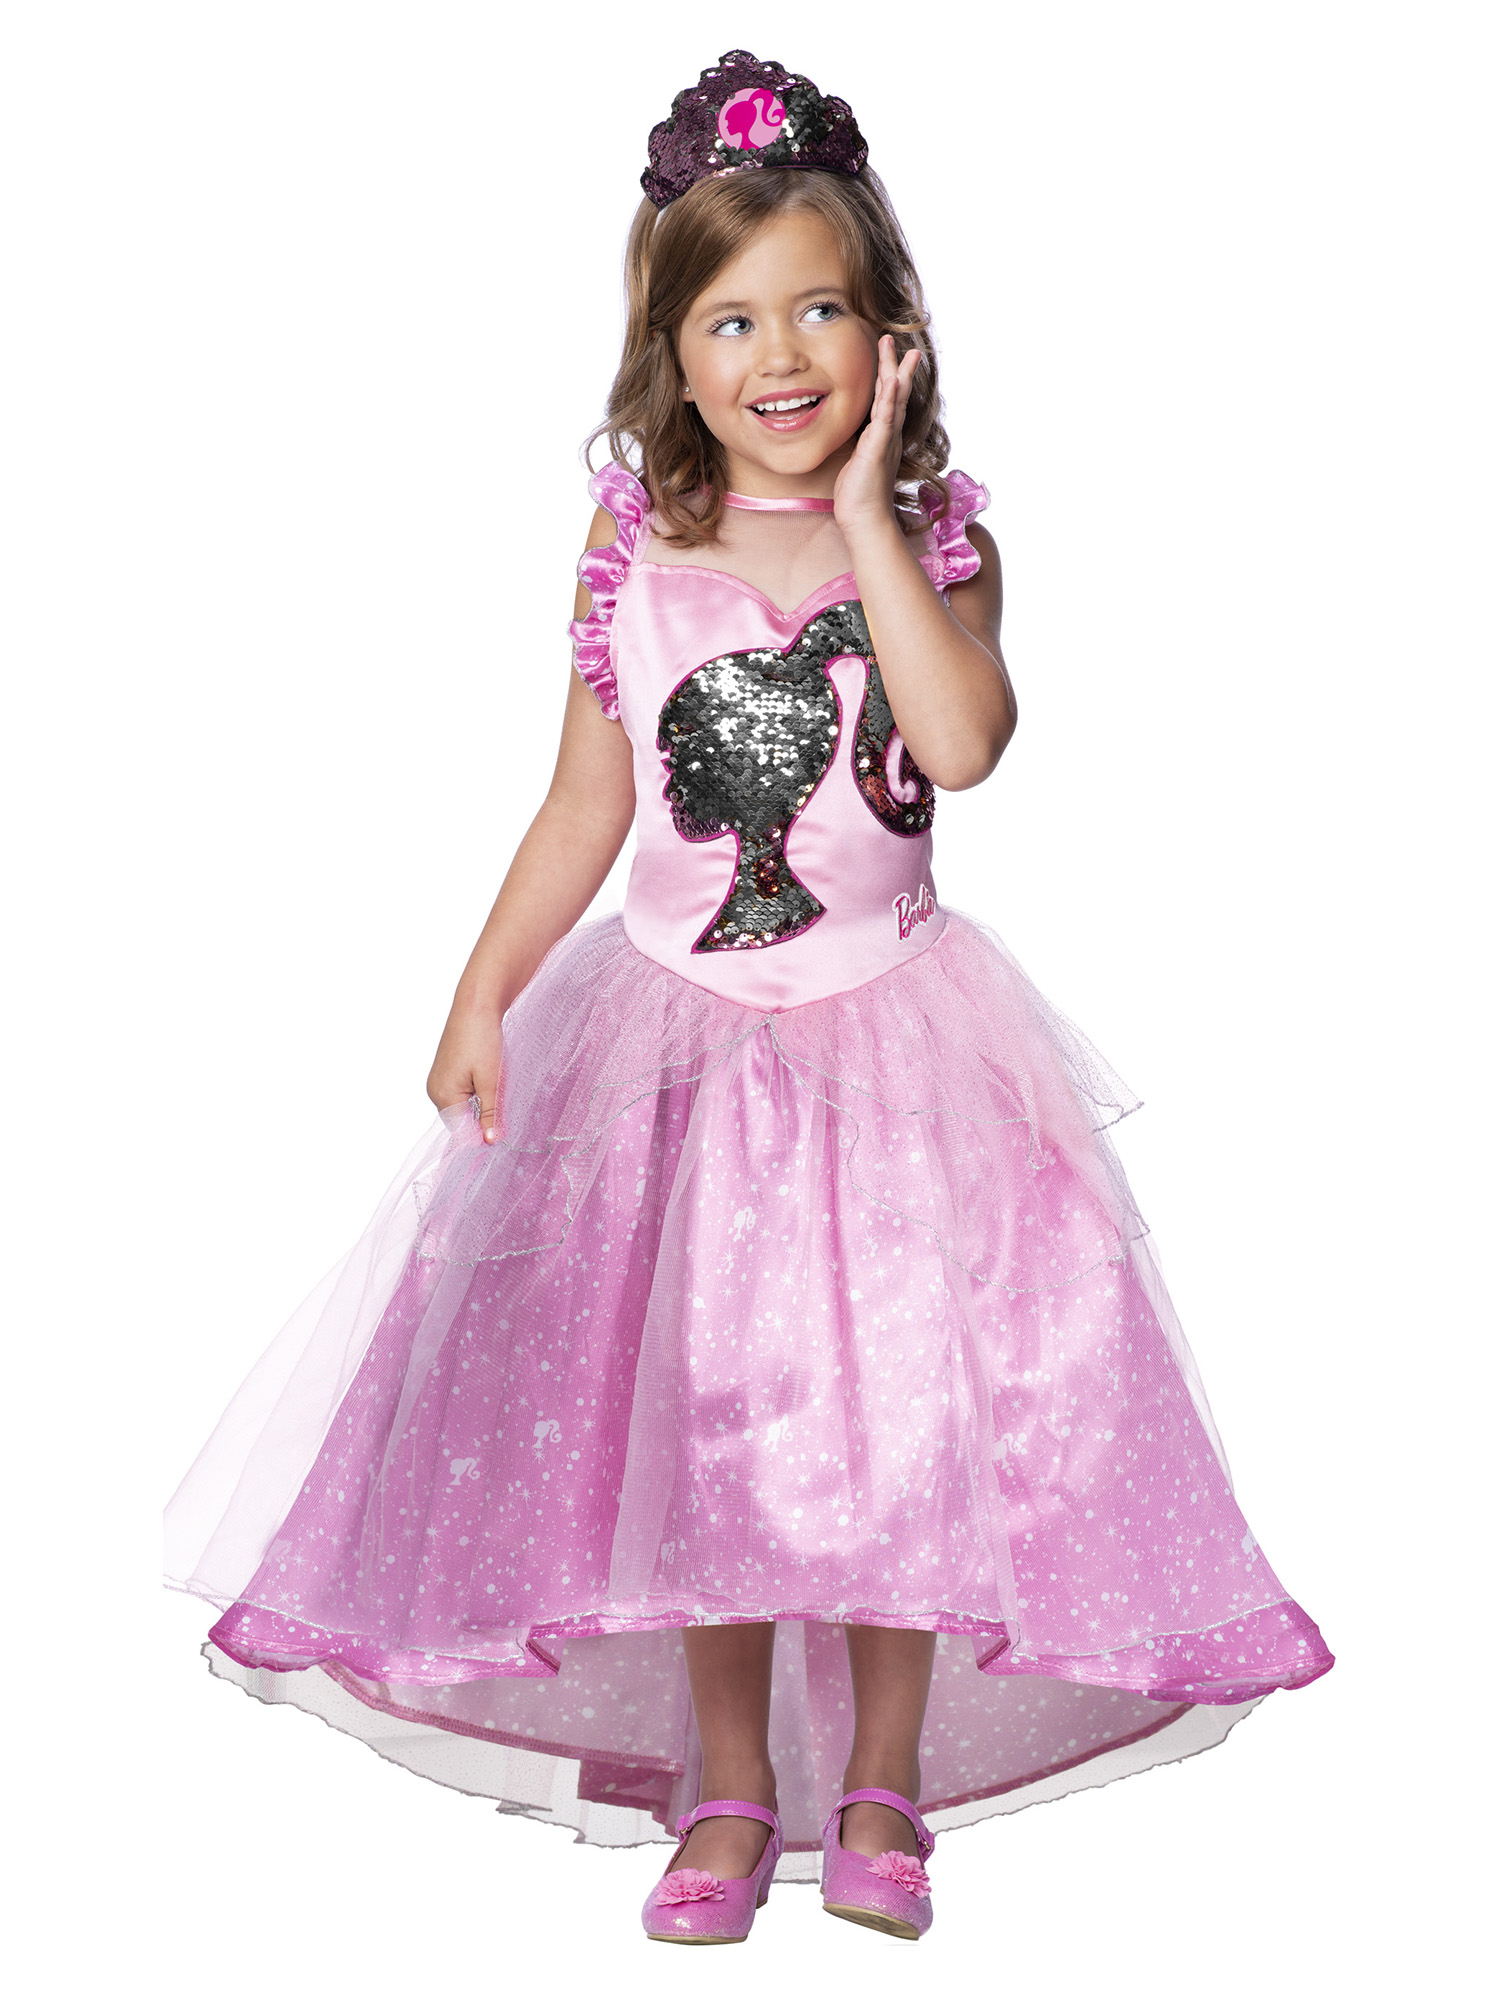 Rubies Dětský kostým - Barbie princezna Velikost - děti: M